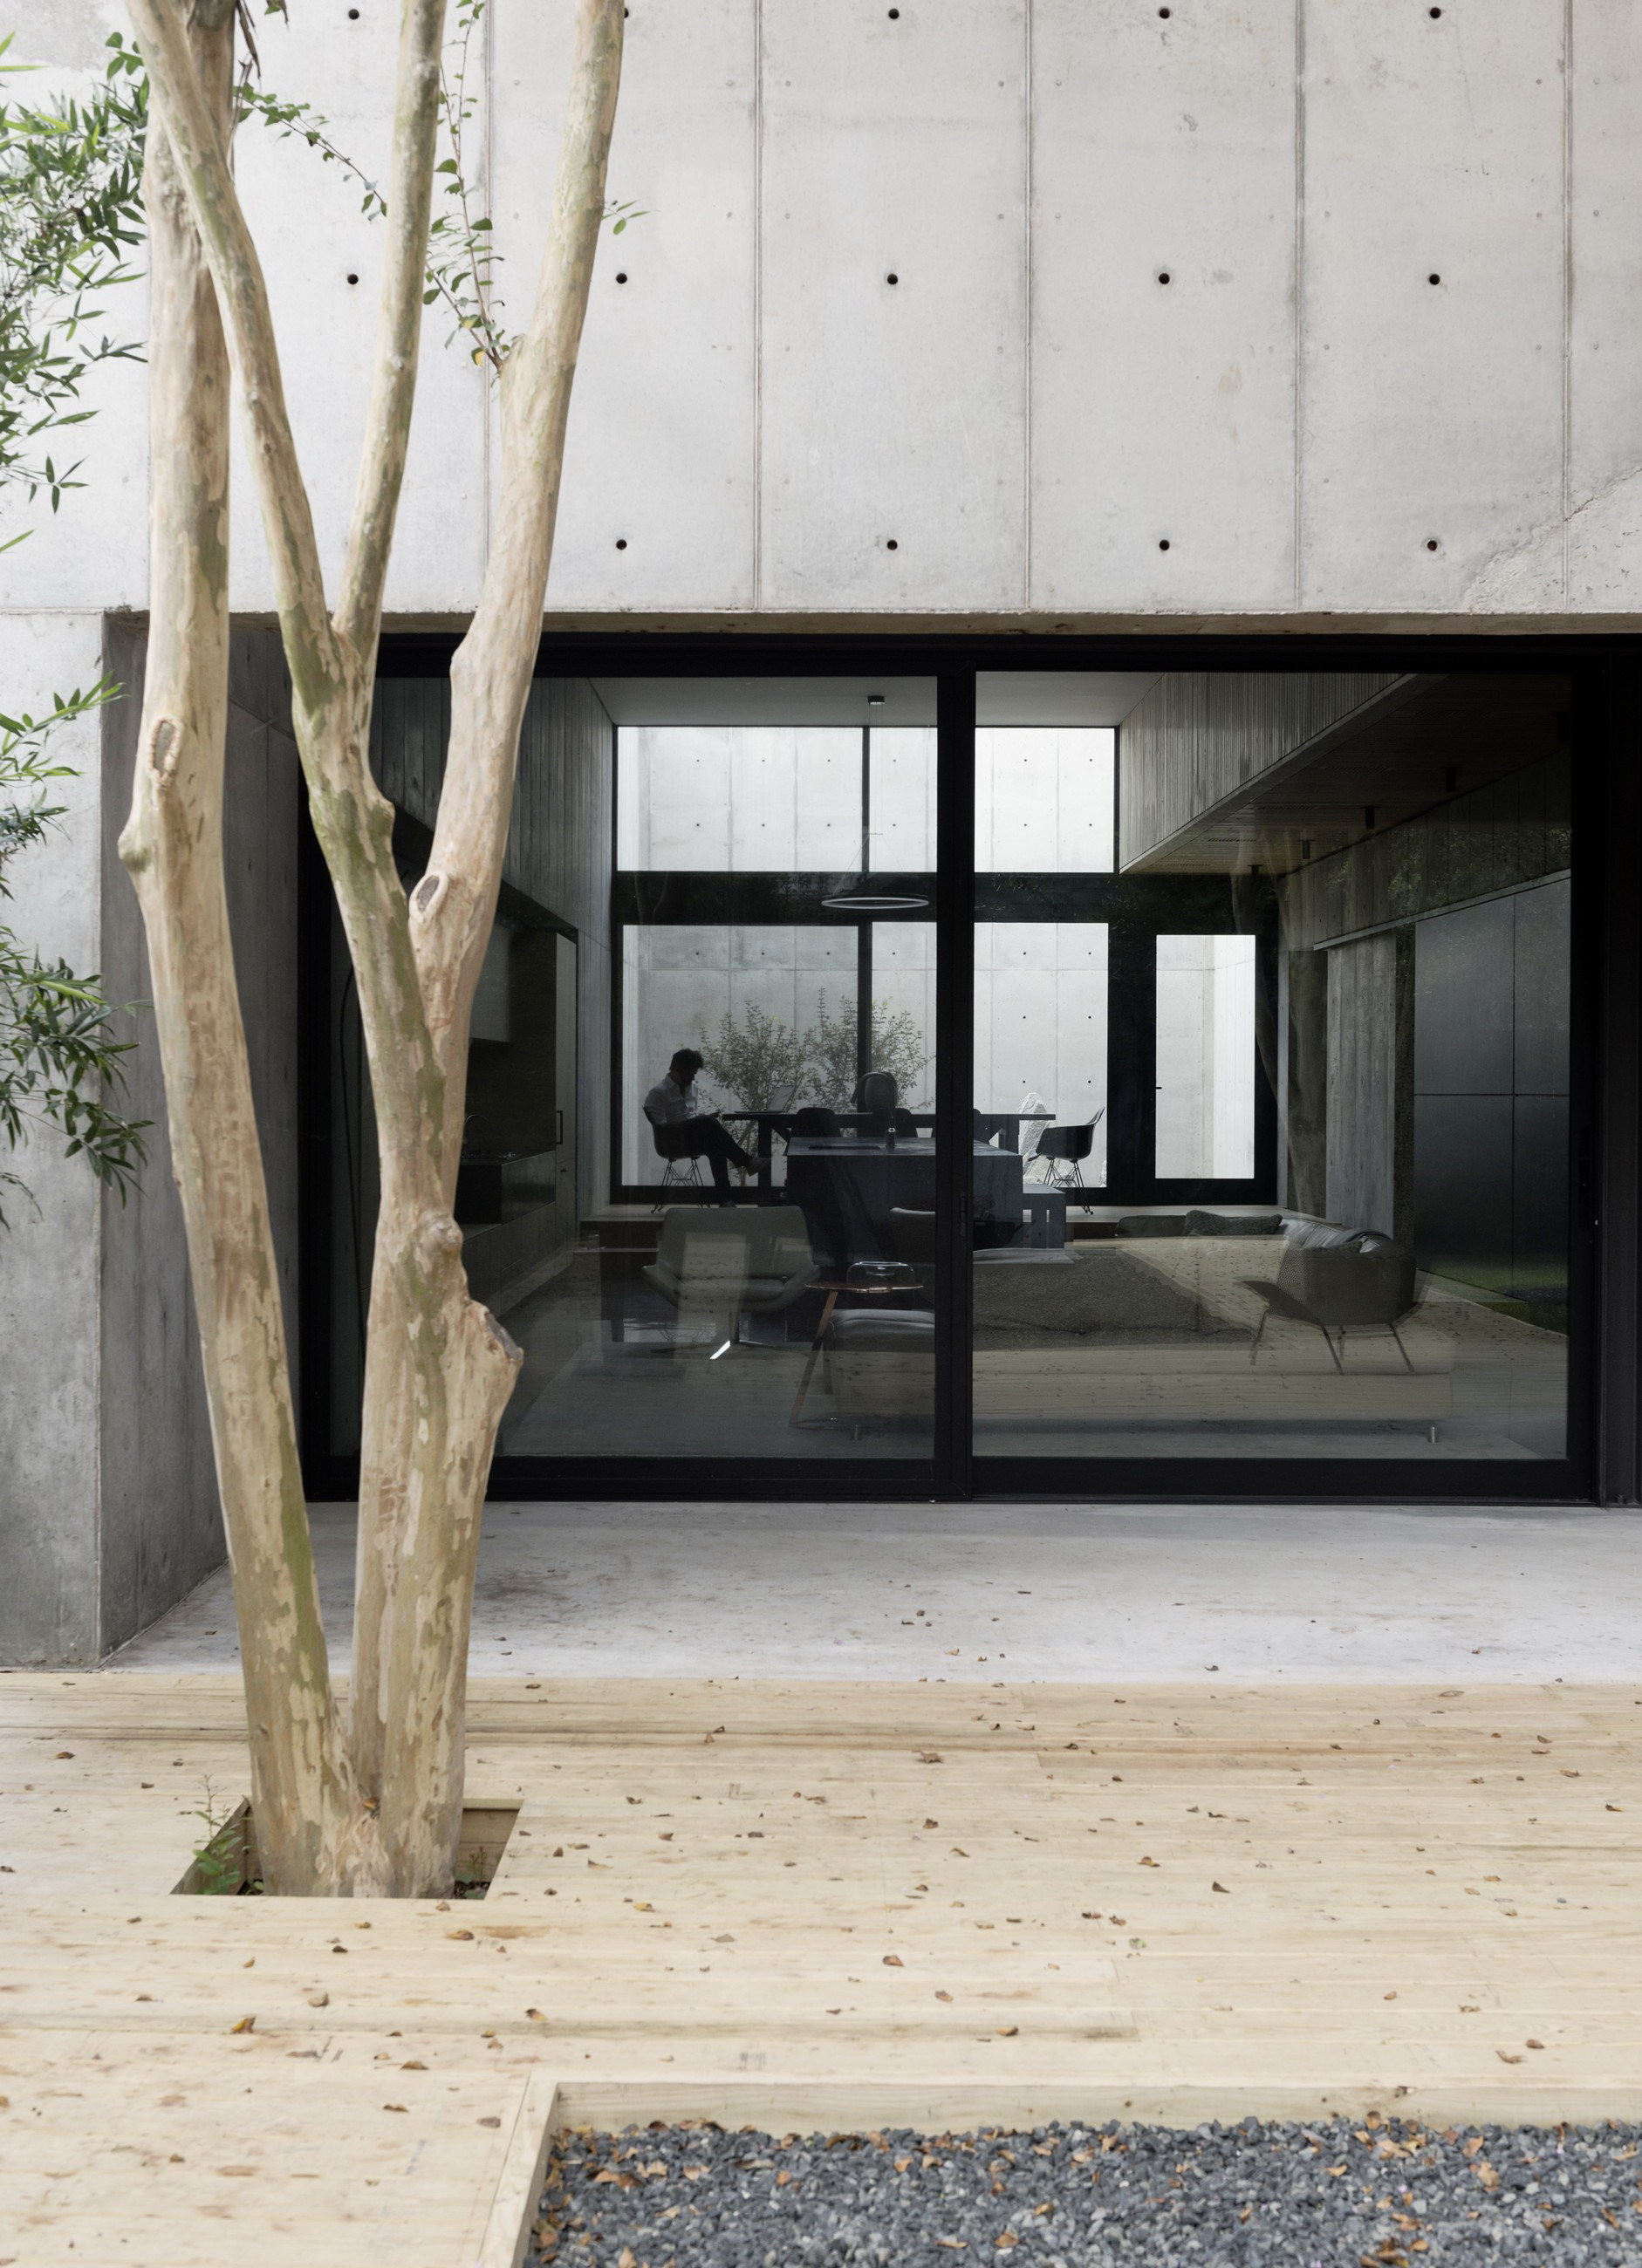 Concrete Box House by Robertson Design